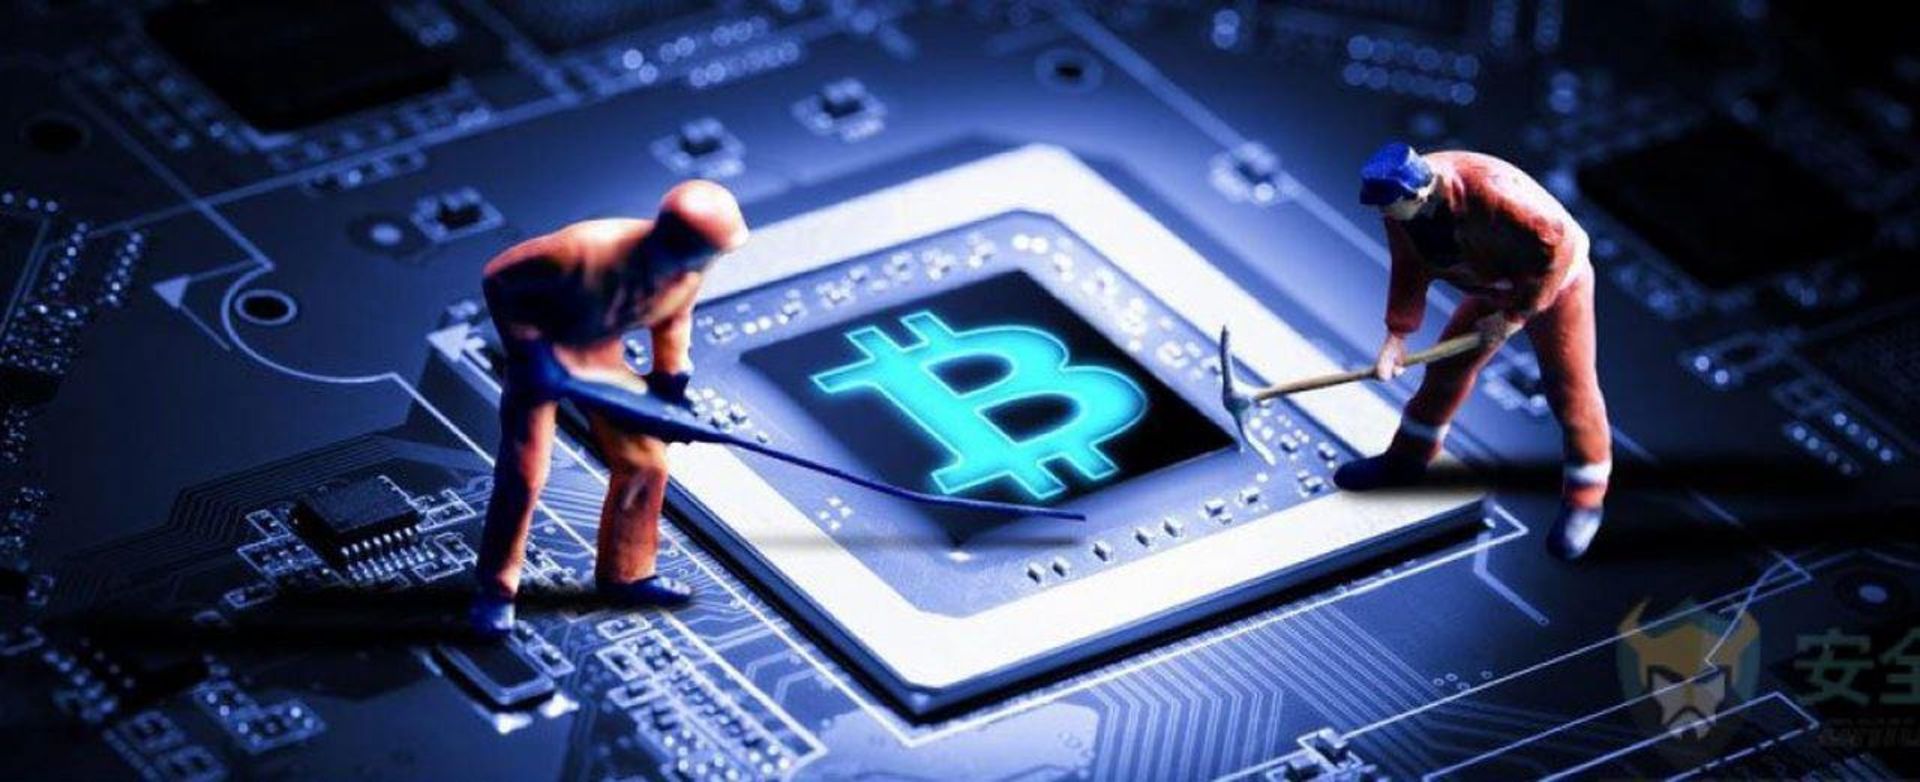 مرجع متخصصين ايران Bitcoin Mining